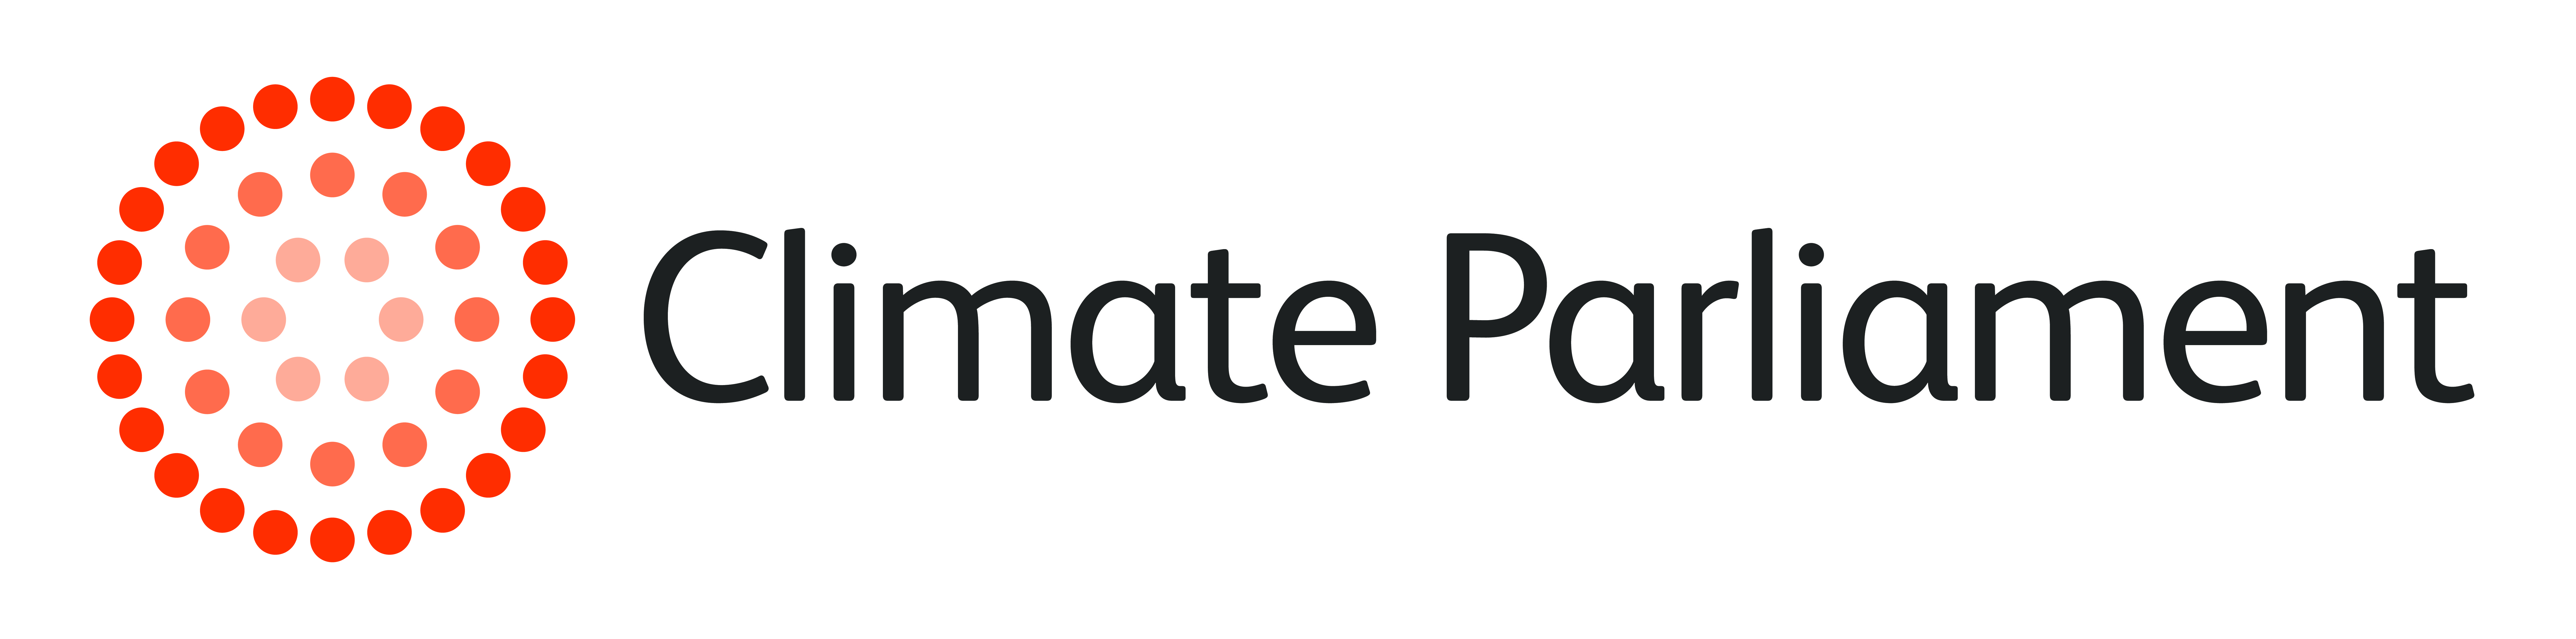 Climate Parliament logo